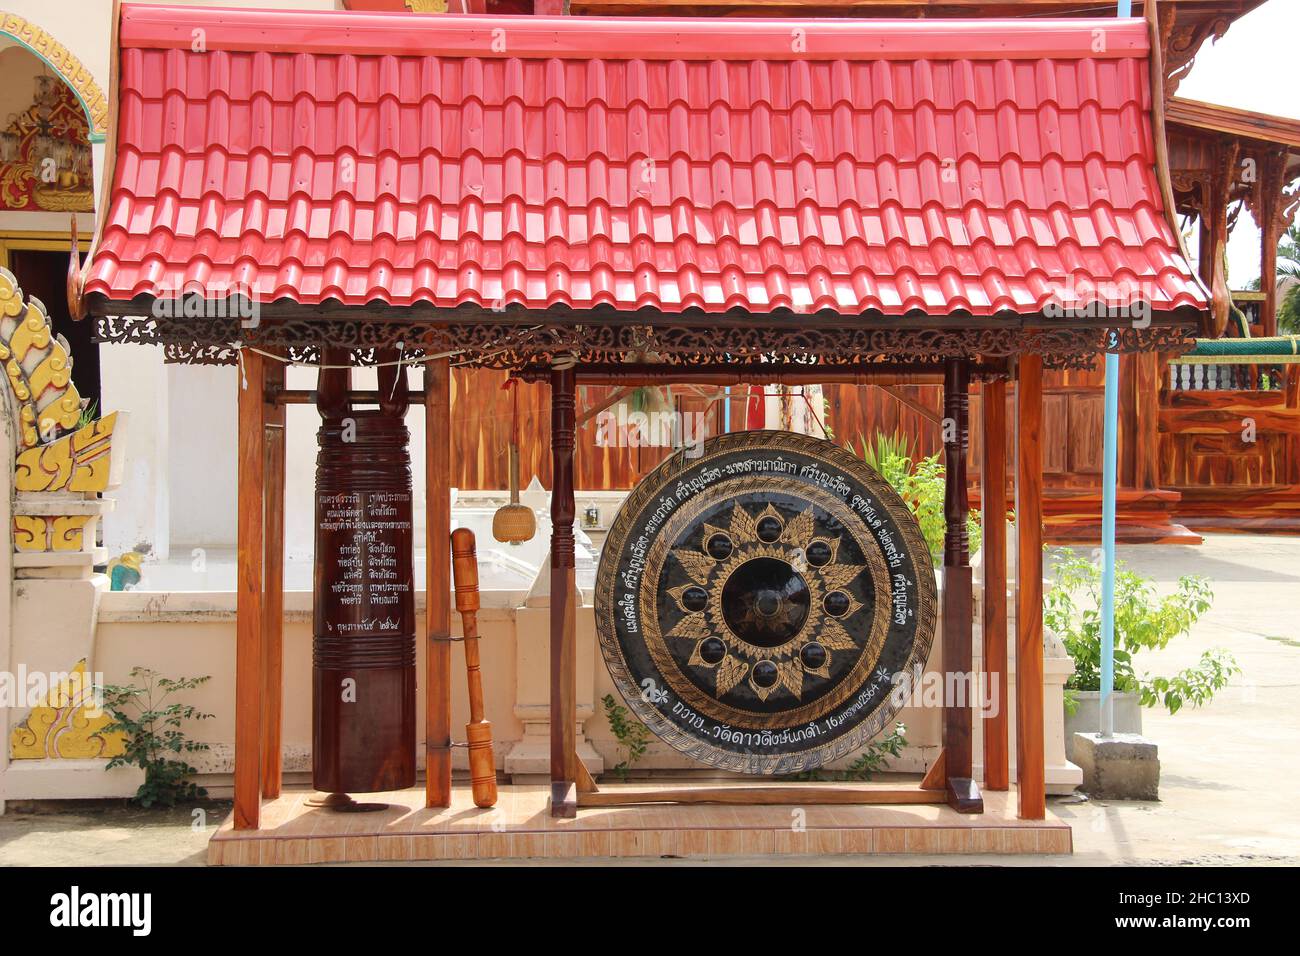 Images photographiques du nord-est de la Thaïlande prises dans les temples bouddhistes dans et autour de Roi et, la capitale culturelle d'Isaan. Banque D'Images